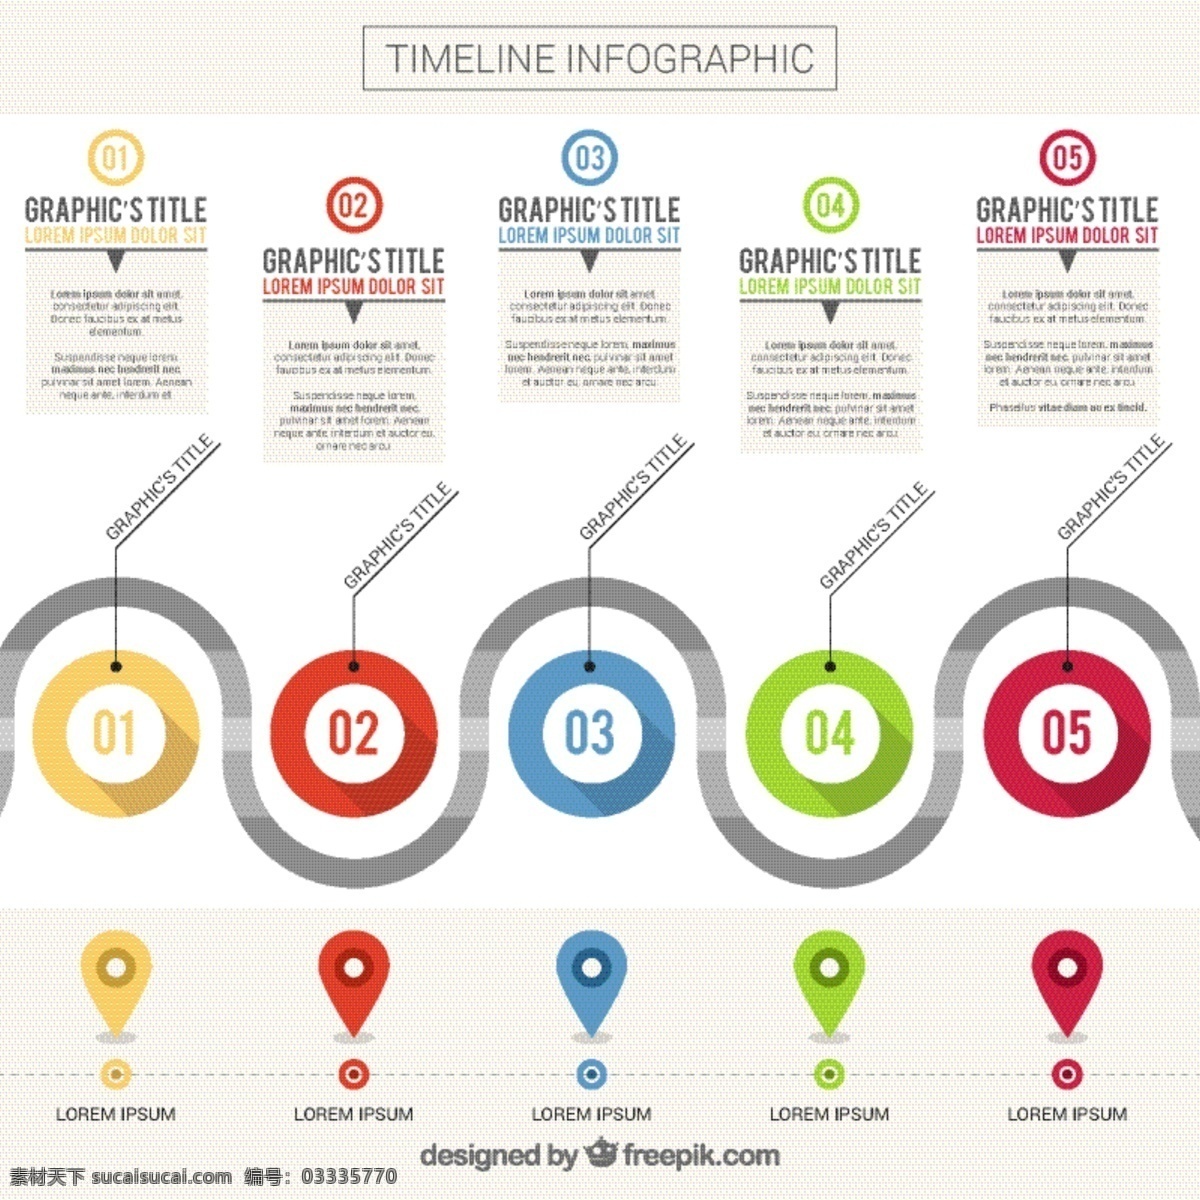 丰富多彩 形状 时间 线 图表 模板 业务 图形 营销 时间线 图 五颜六色的 平坦的 流程 信息图表模板 数据 信息 平面设计 商业图表